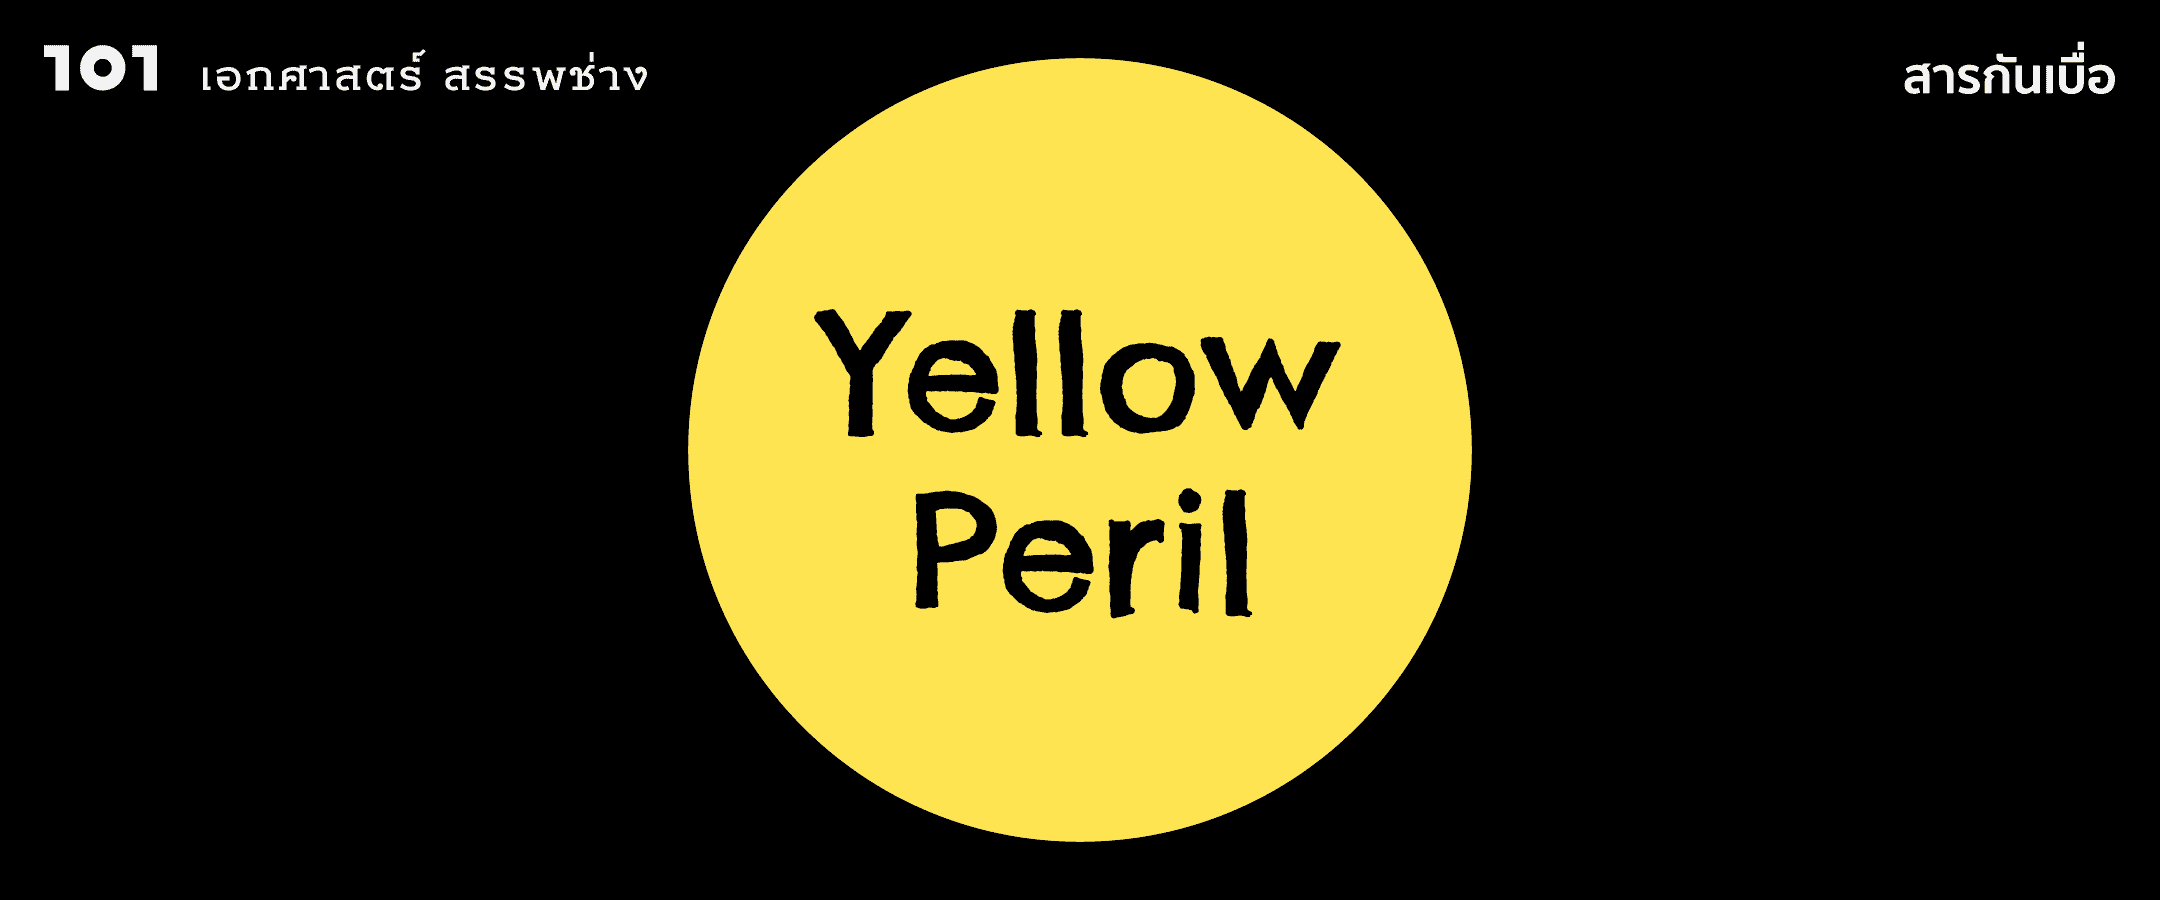 ภัยเหลือง (Yellow Peril) : ศัพท์ที่กลับมาฮิตจากวิกฤตโควิด-19